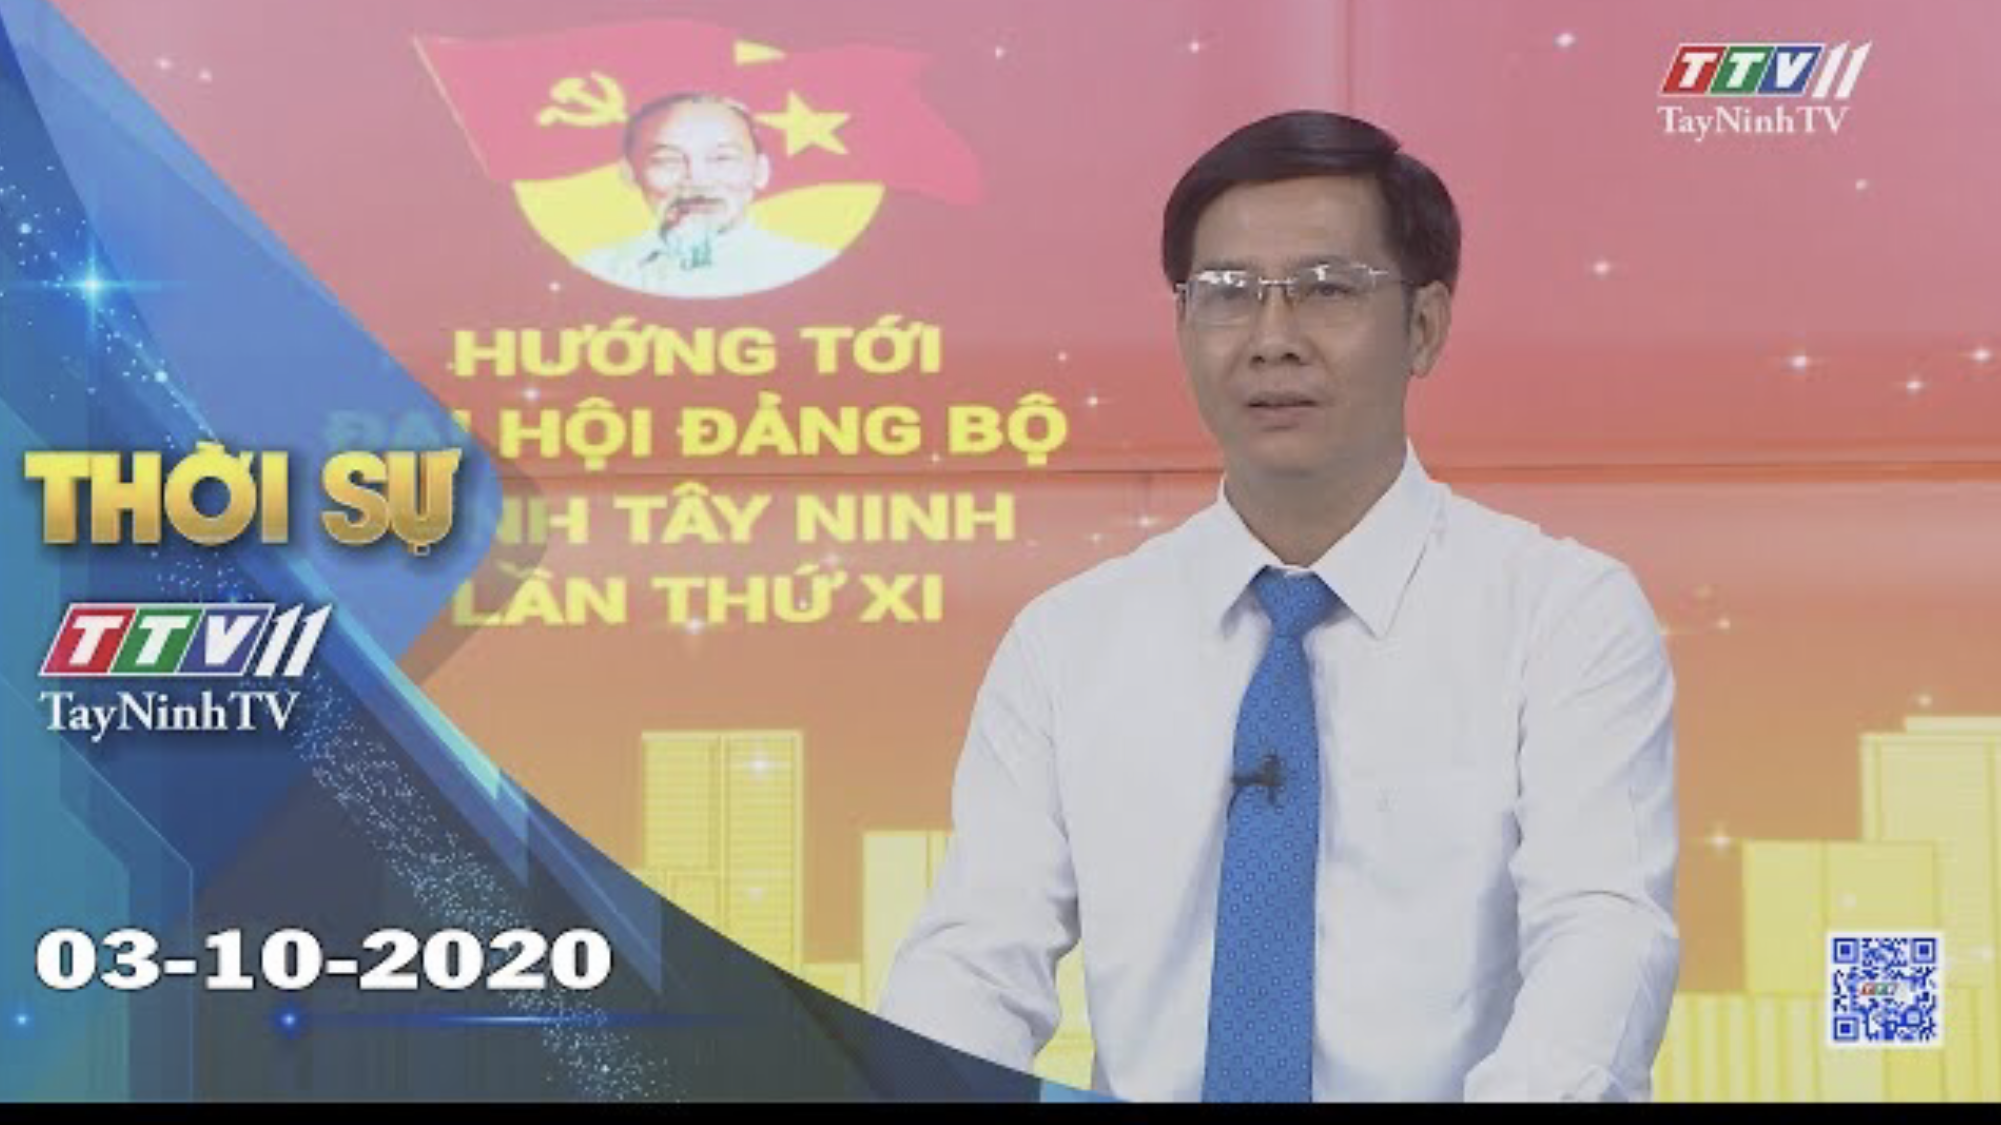 Thời sự Tây Ninh 03-10-2020 | Tin tức hôm nay | TayNinhTV